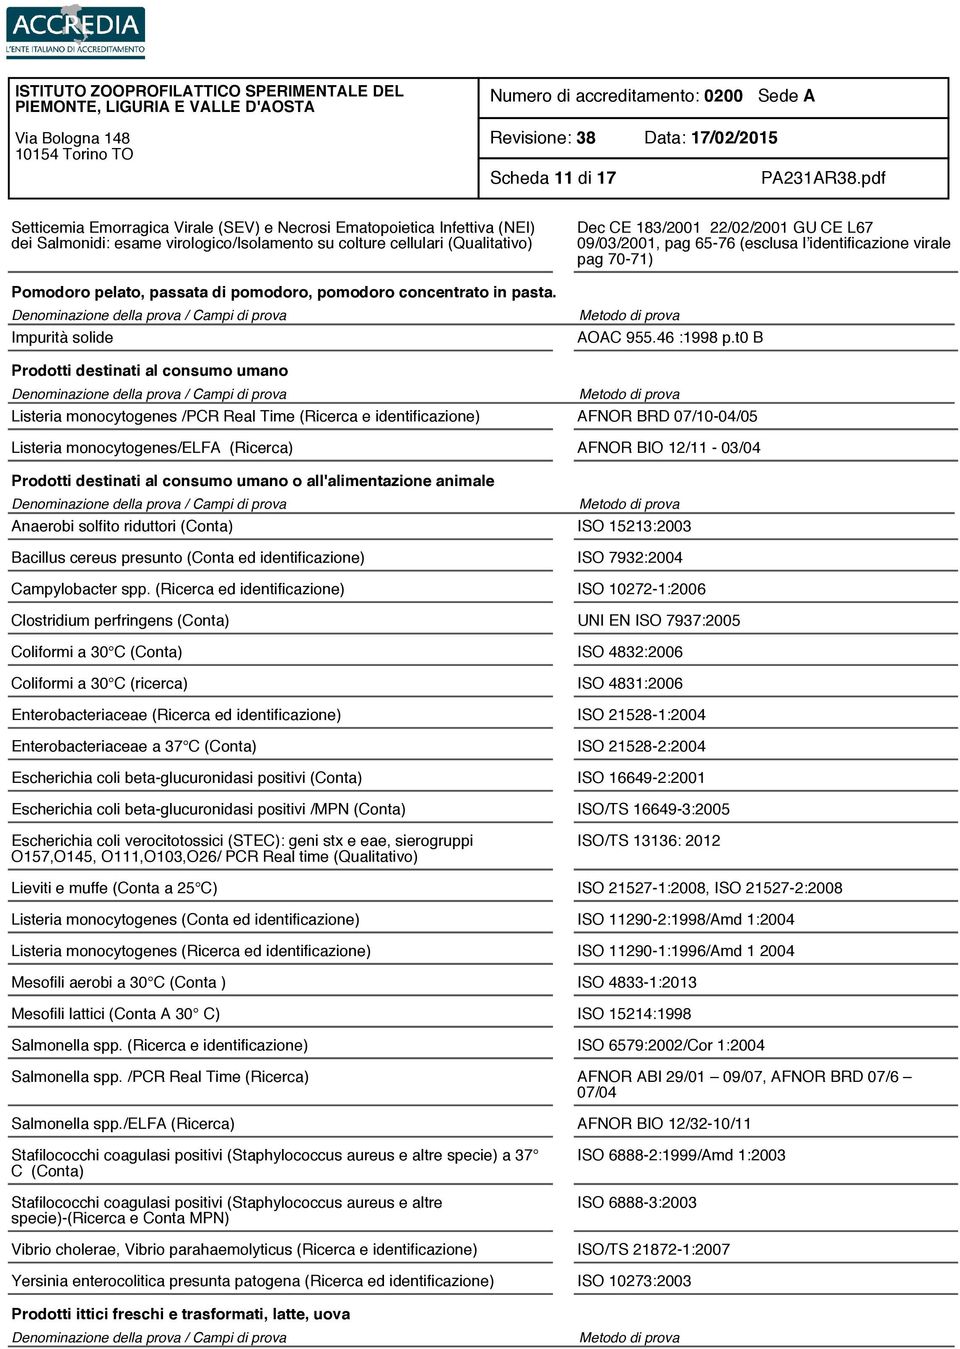 t0 B Prodotti destinati al consumo umano Listeria monocytogenes /PCR Real Time (Ricerca e identificazione) AFNOR BRD 07/10-04/05 Listeria monocytogenes/elfa (Ricerca) AFNOR BIO 12/11-03/04 Prodotti